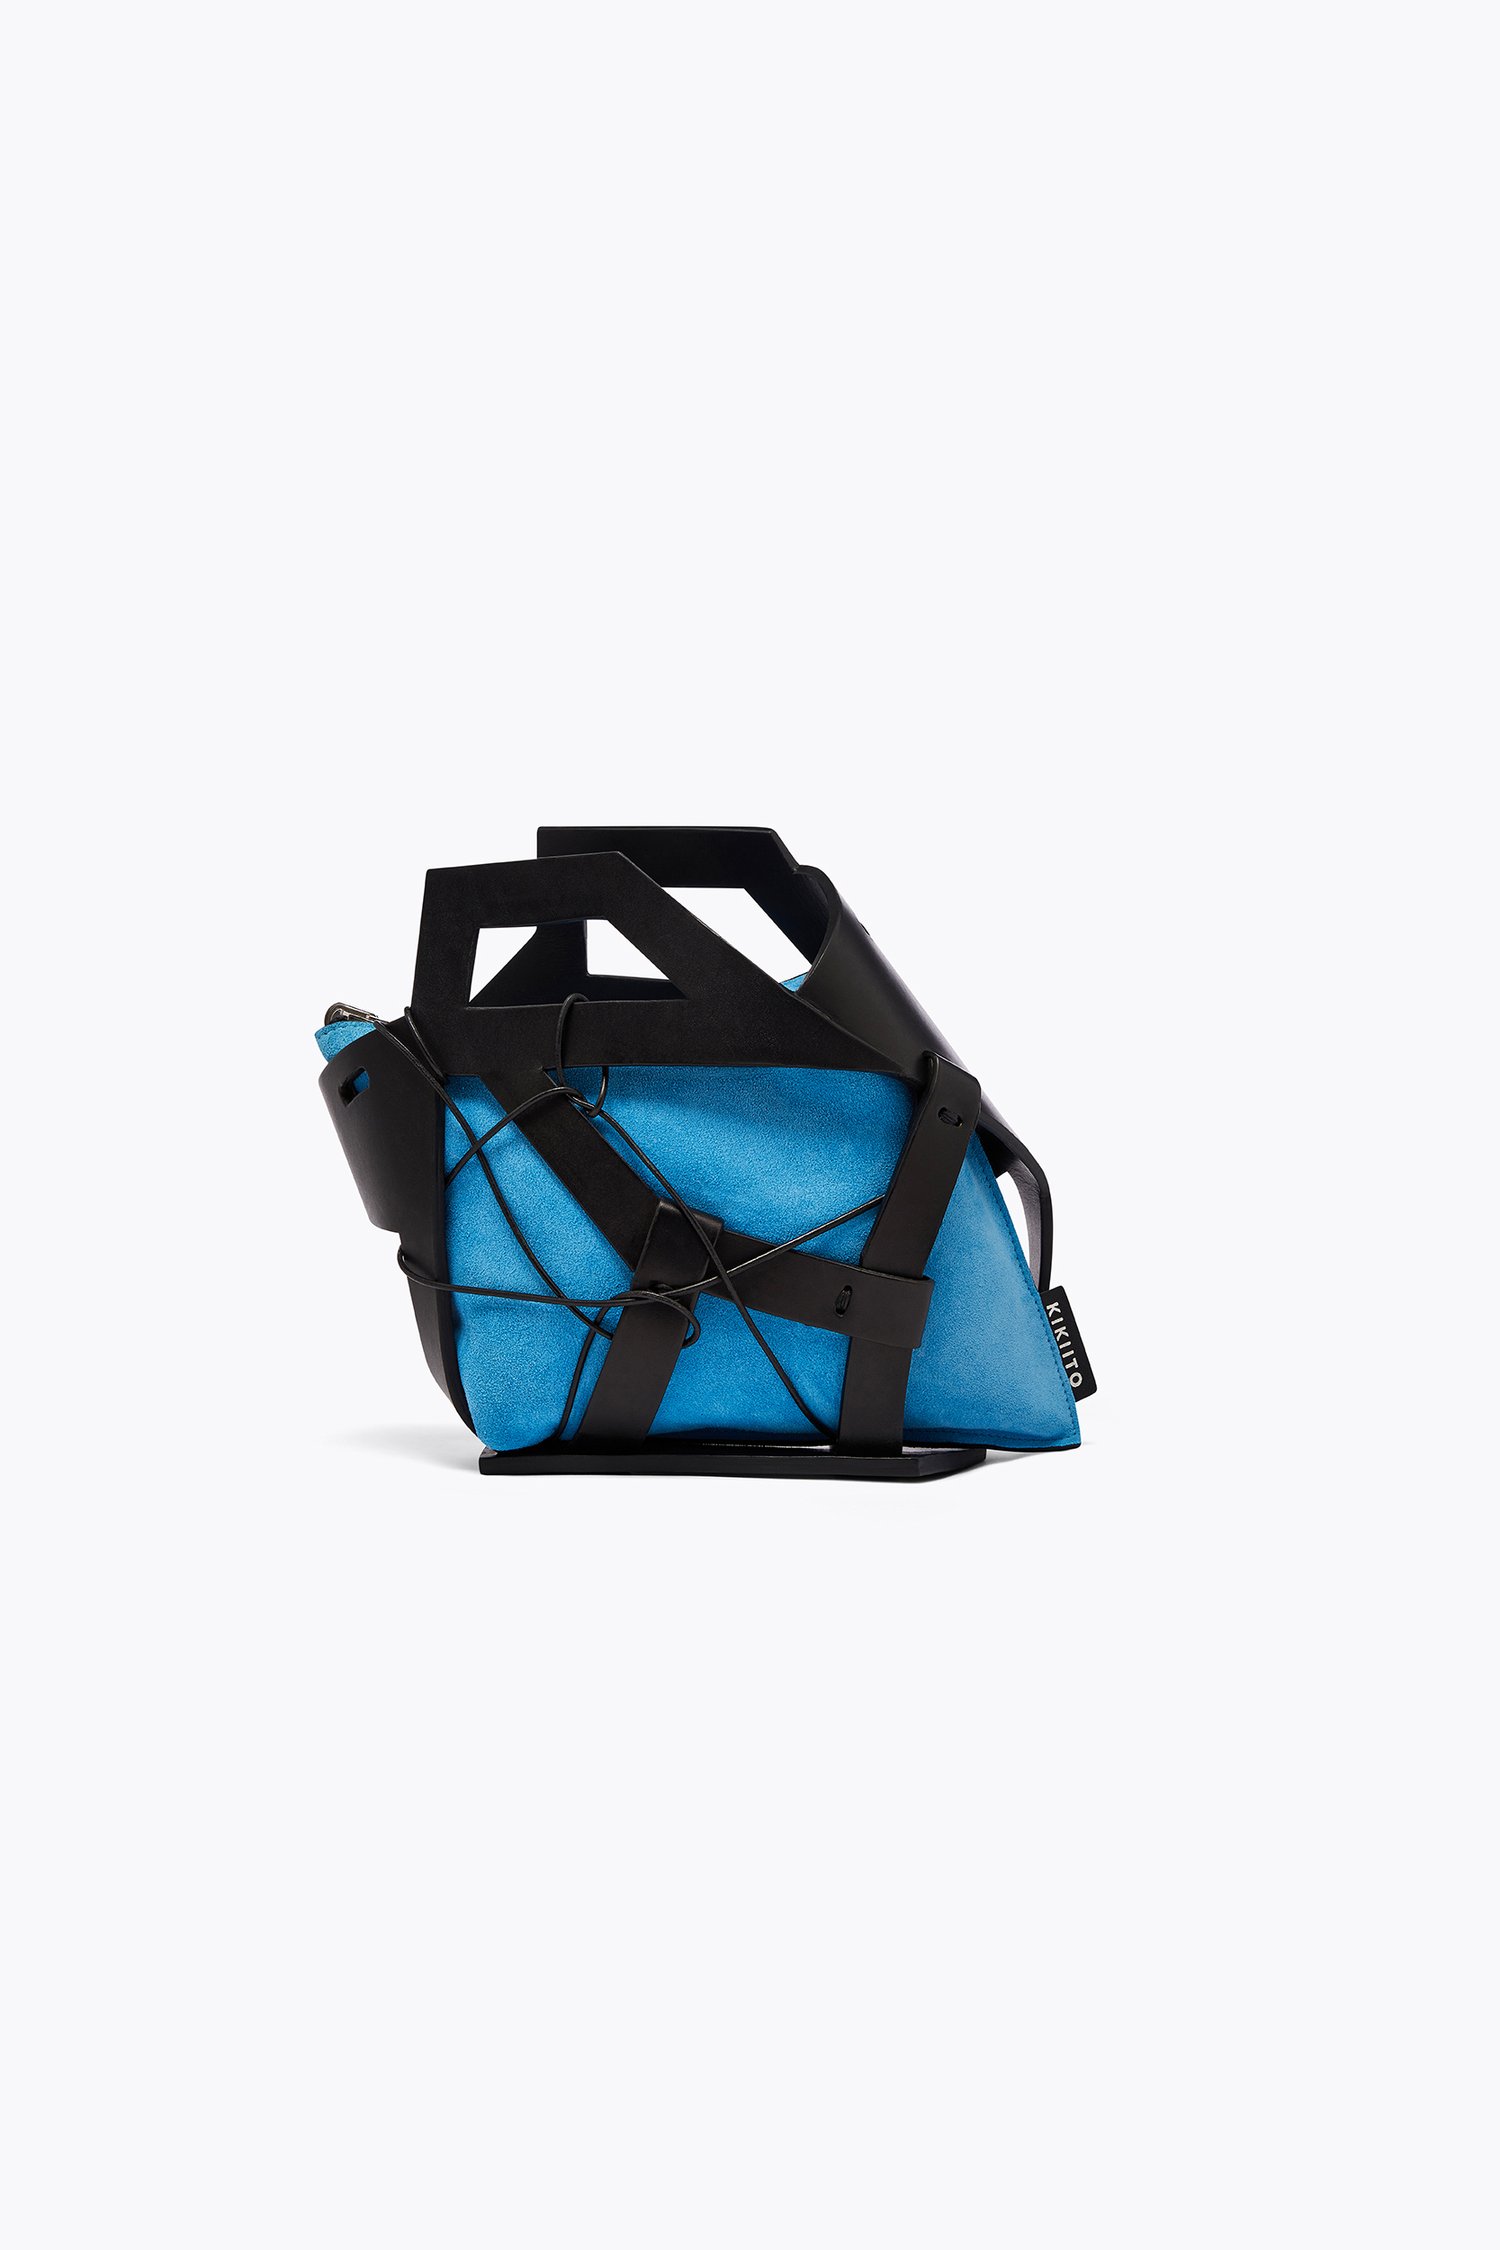 ZENYO Handbag - Black/Blue Leather — KIKIITO